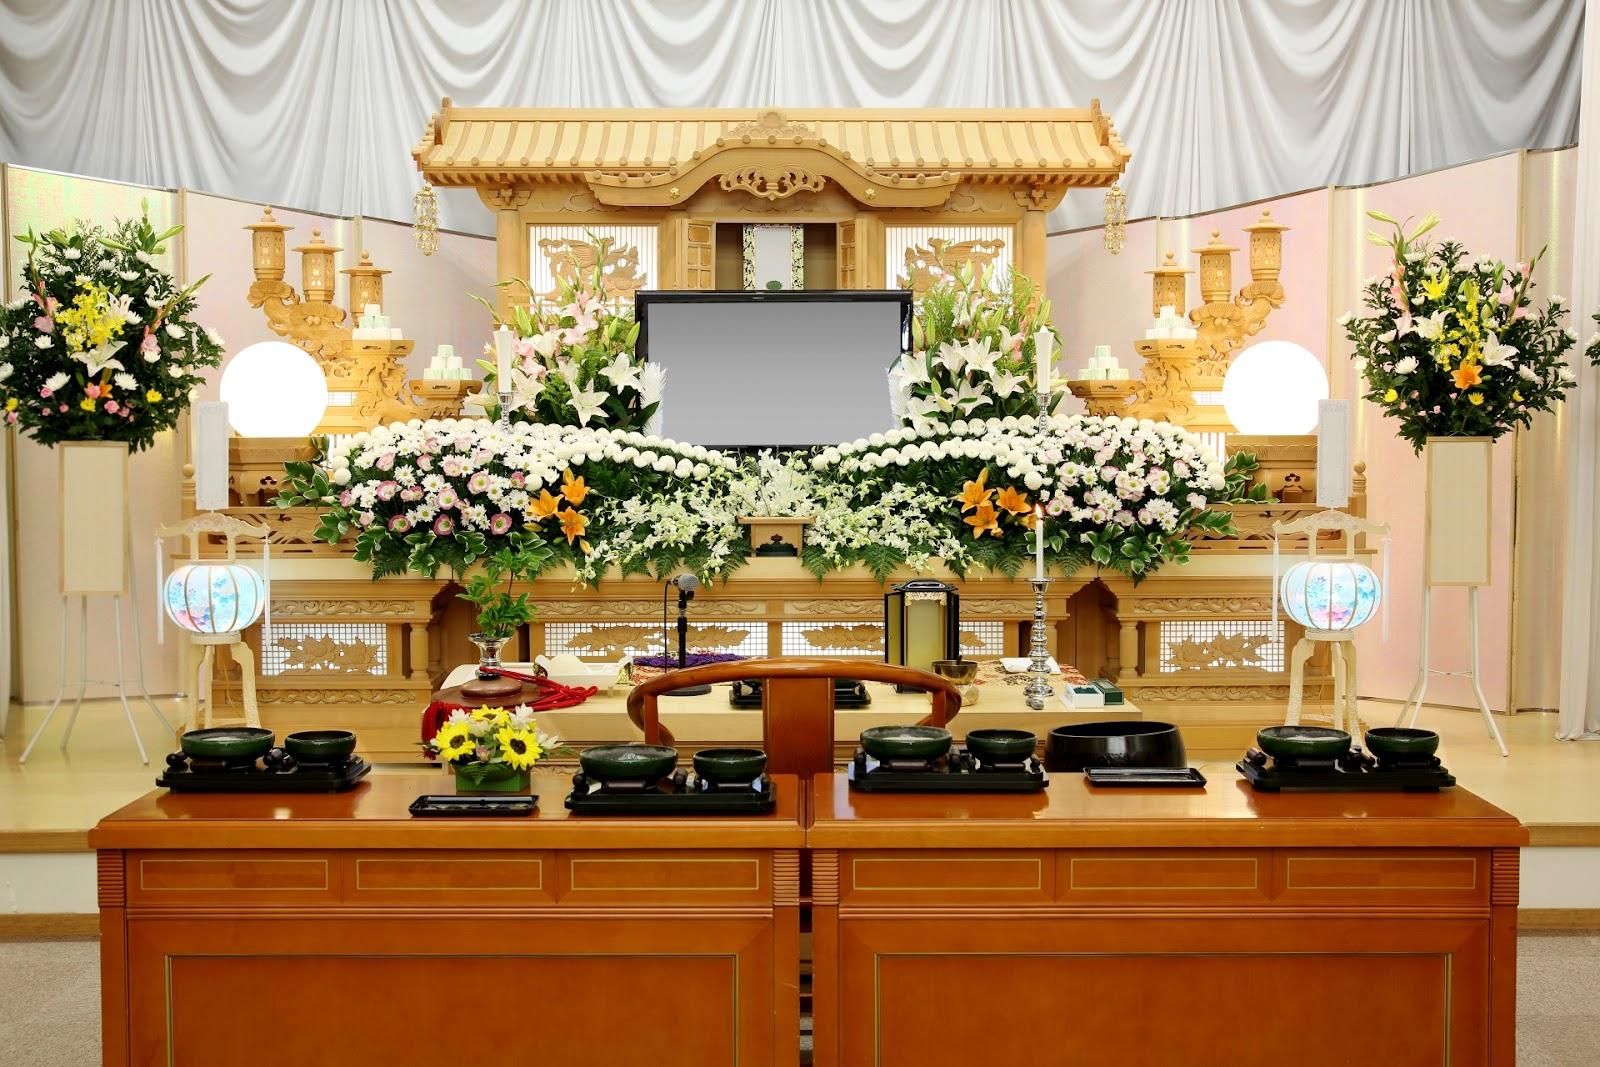 お葬式の花の種類とは 供花 献花 枕花などの違いも解説 神奈川県の葬儀 葬式 家族葬なら定額葬儀の 杉浦本店